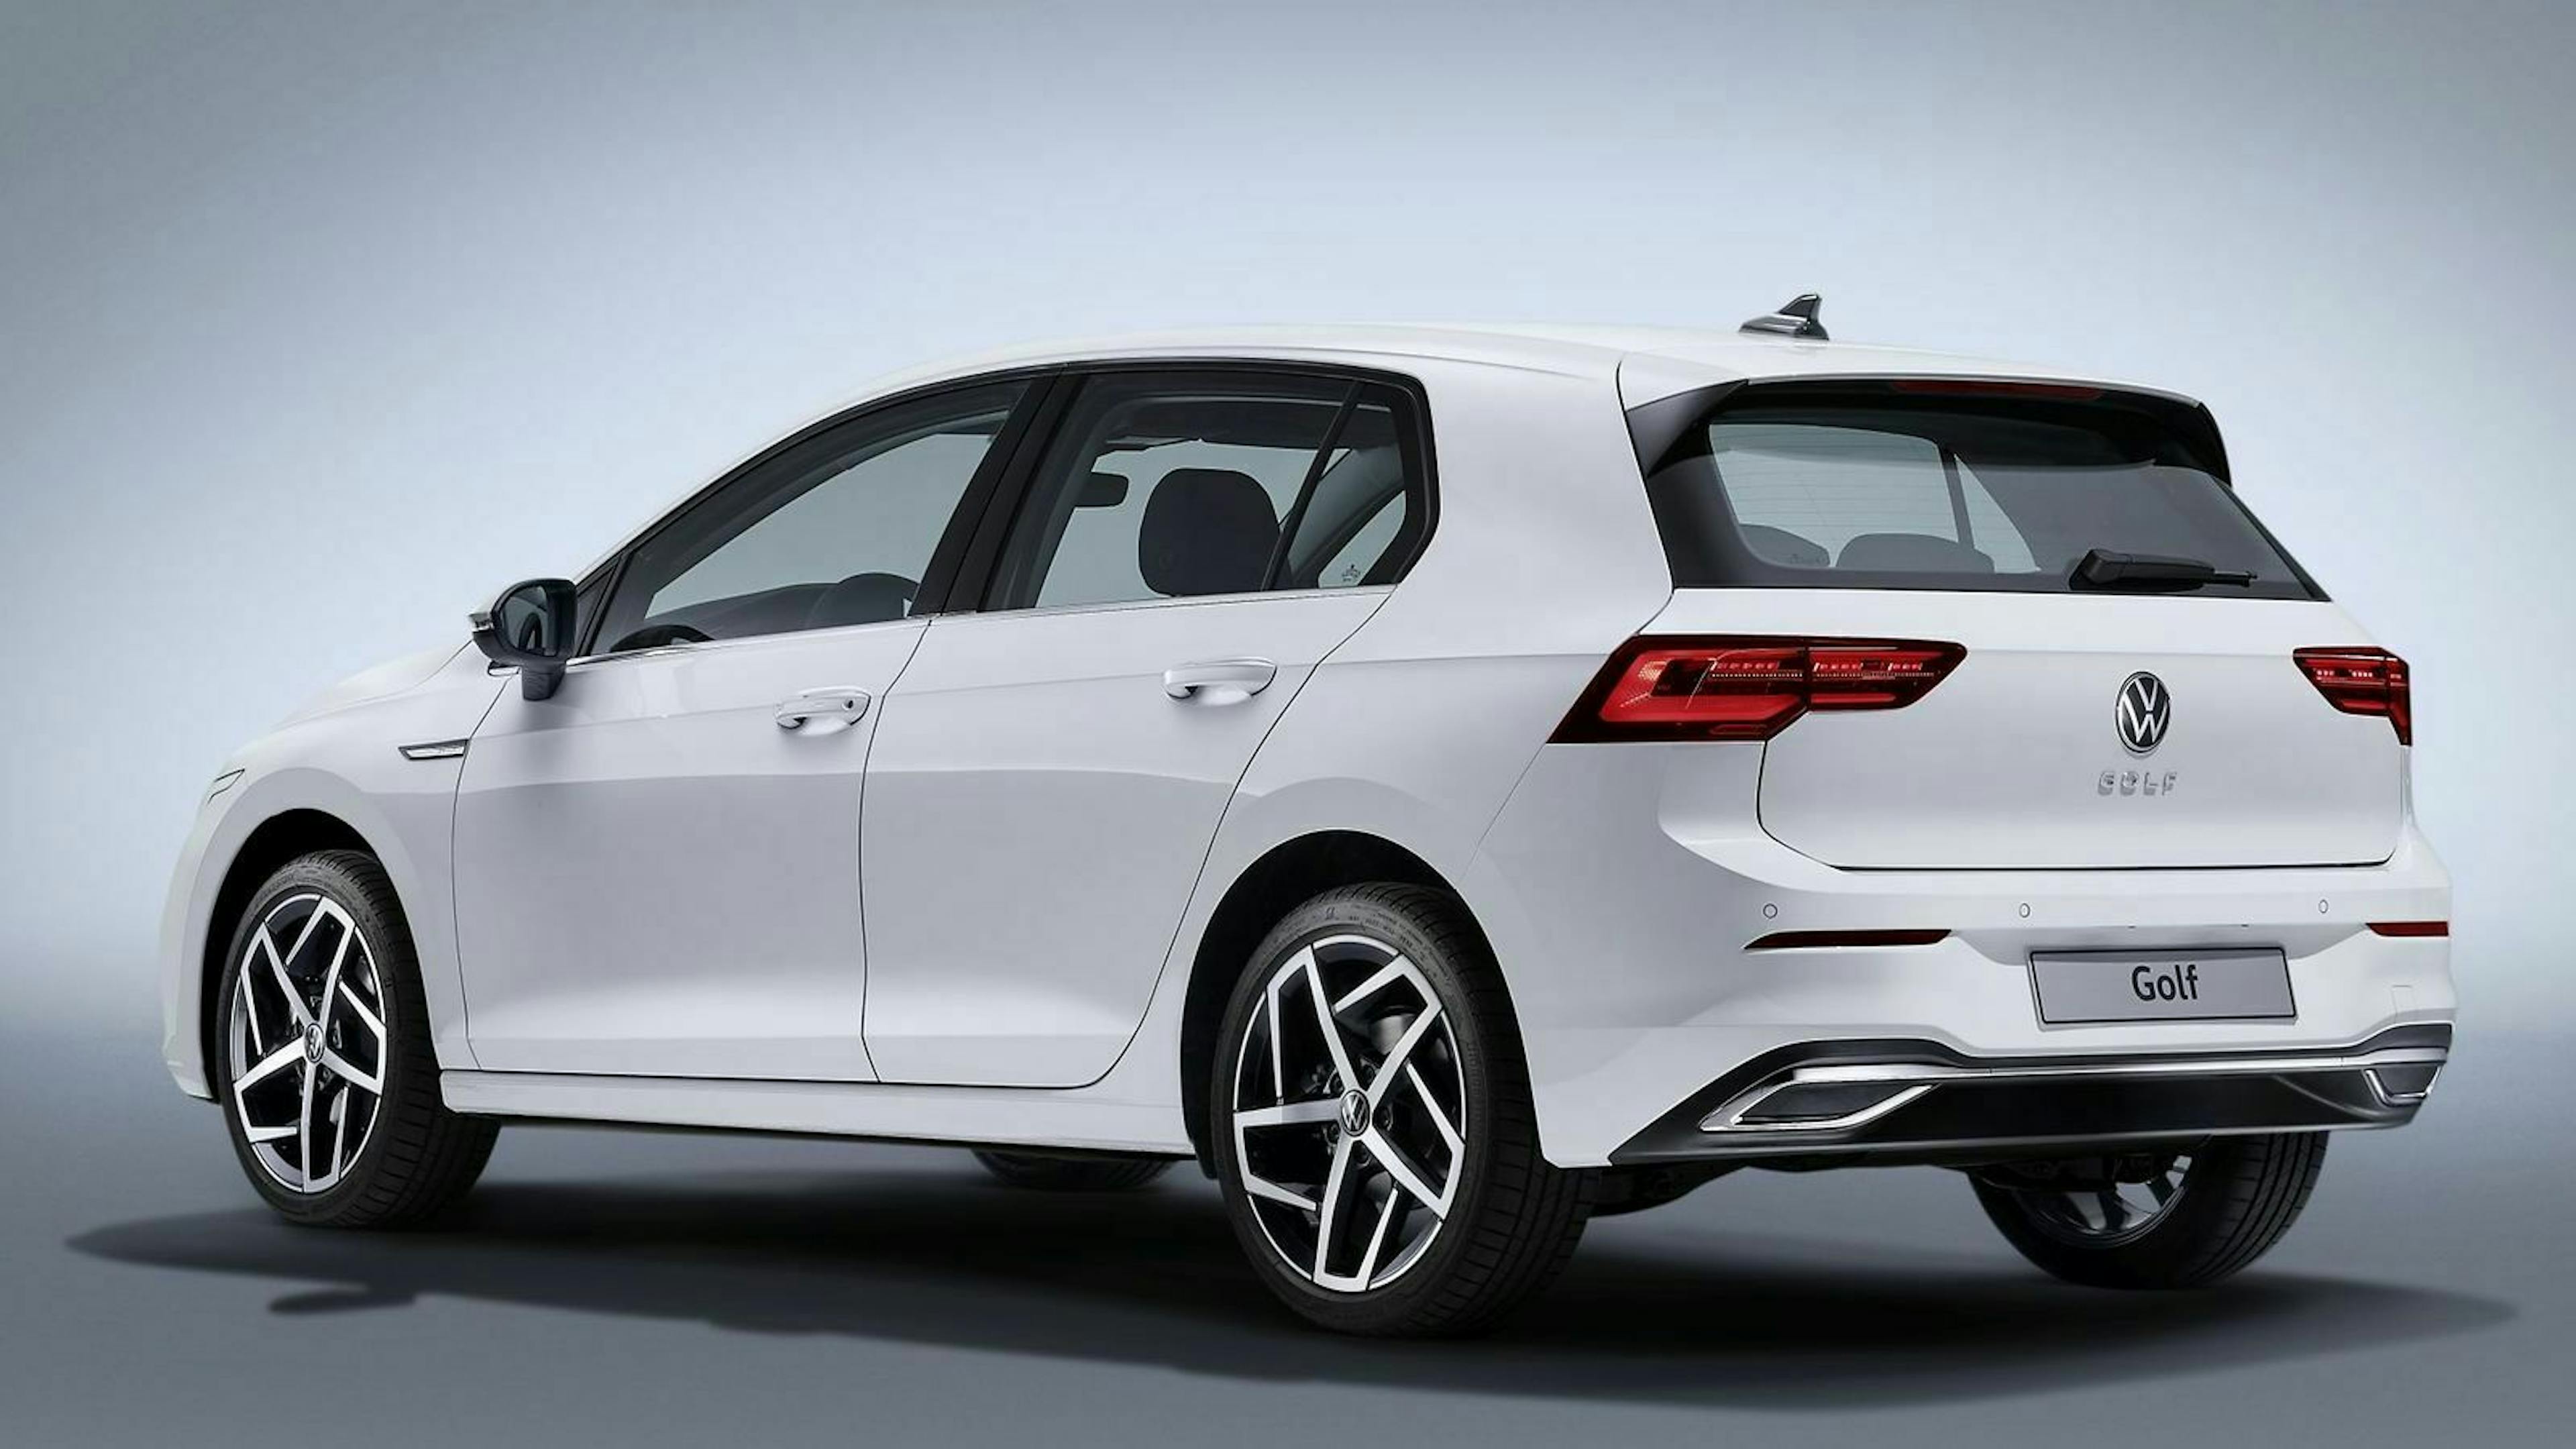 Ein neuer VW Golf bedeutet nicht unbedingt große Veränderungen. Alle Bleche sind neu, der Anblick wirkt trotzdem gewohnt